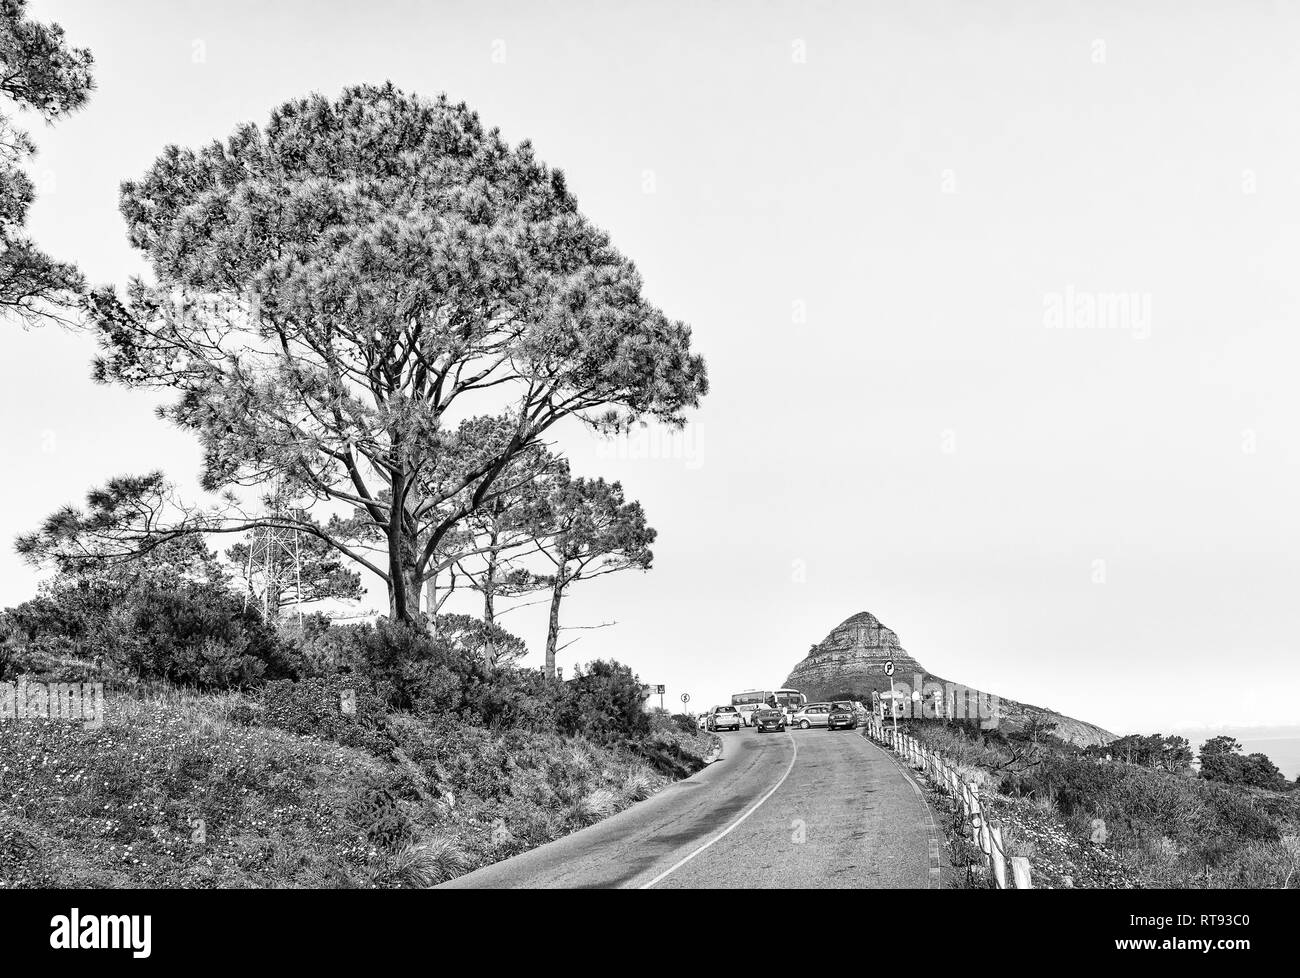 CAPE TOWN, AFRIQUE DU SUD, le 9 août 2018 : La route menant au sommet de Signal Hill à Cape Town. Lions Head, les gens et les véhicules sont visibles. Monochr Banque D'Images